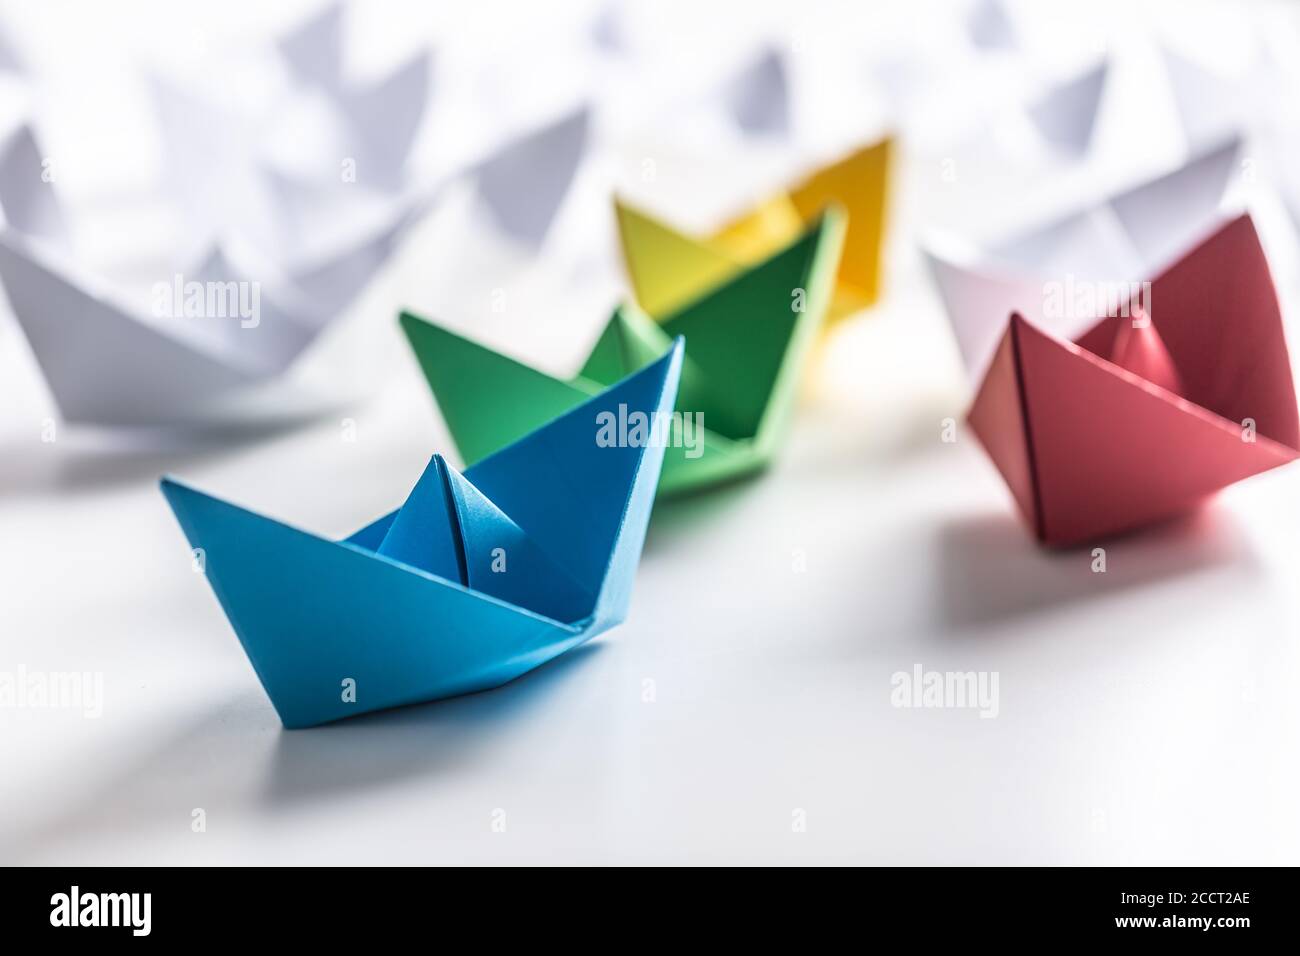 Mehrfarbige Papierboote. Konzept von Führungsbooten für Teamarbeit Gruppe oder Erfolg Stockfoto